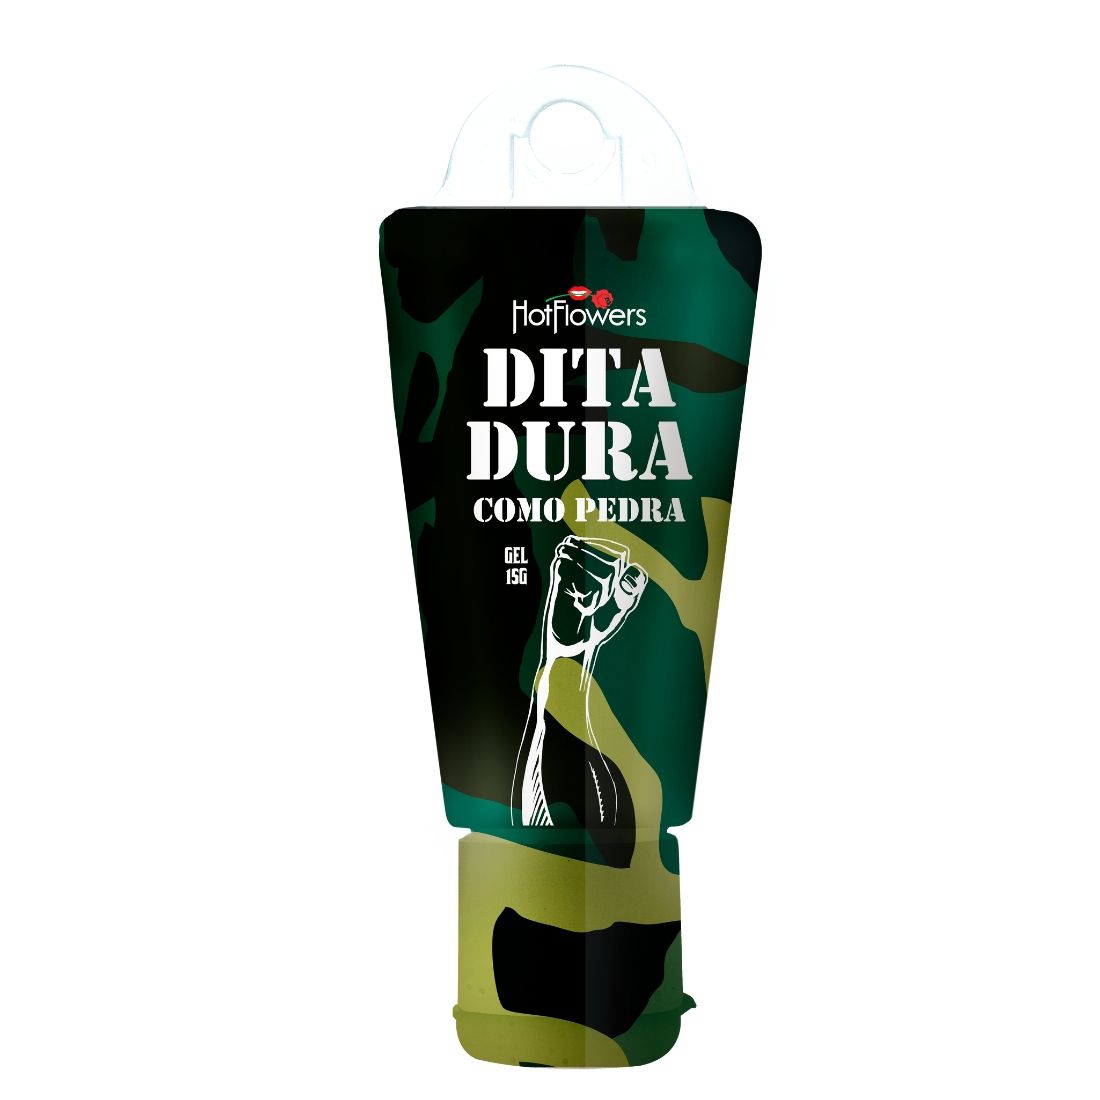 Эрекционный гель Dita Dura Como Pedra вызывает ощущение тепла. В его состав входит экстракт женьшеня, обладающий стимулирующим действием, обеспечивая эрекцию.